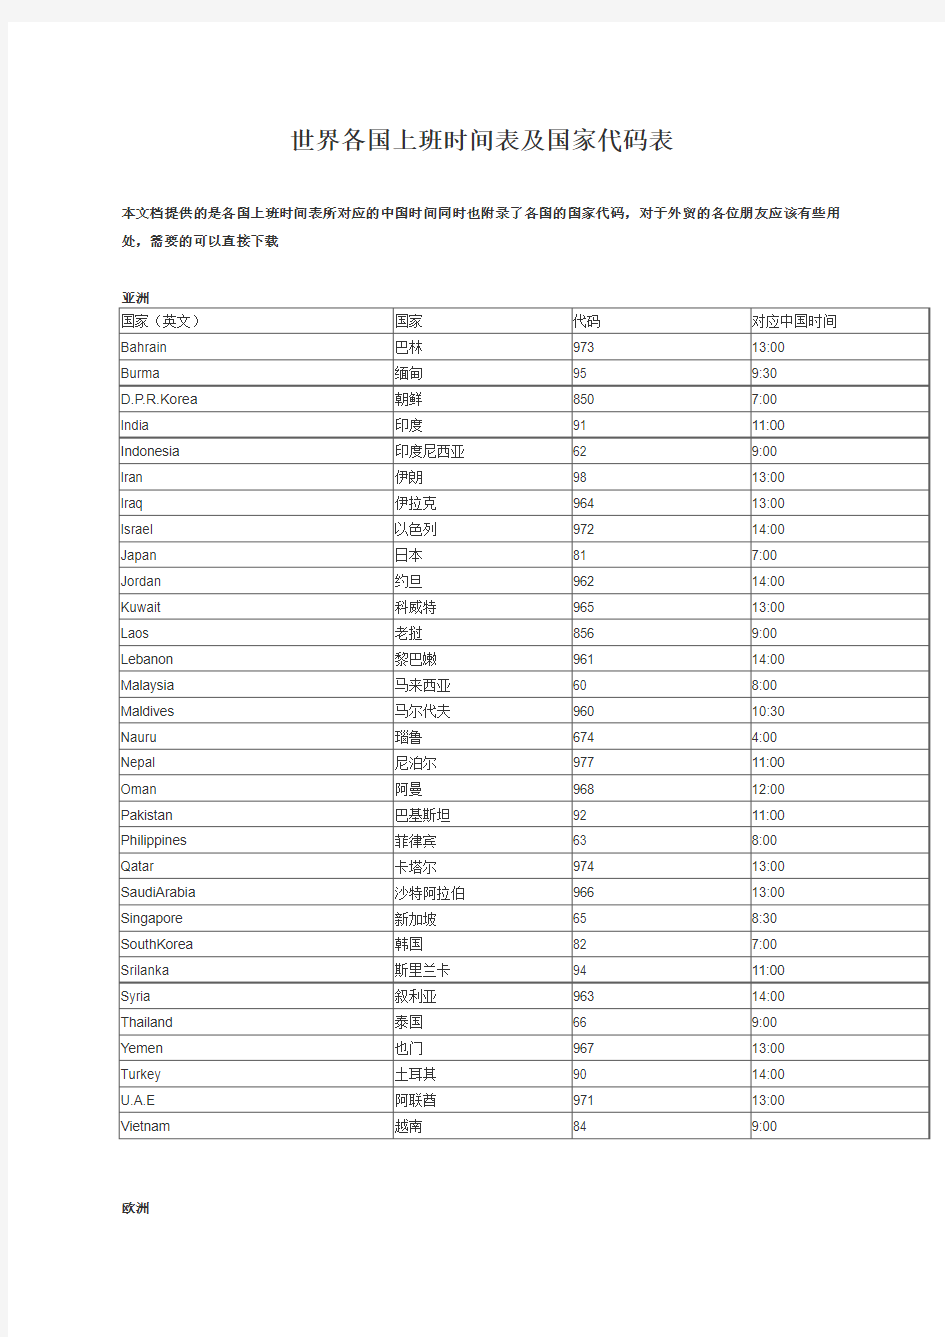 世界各国上班时间表及国家代码表